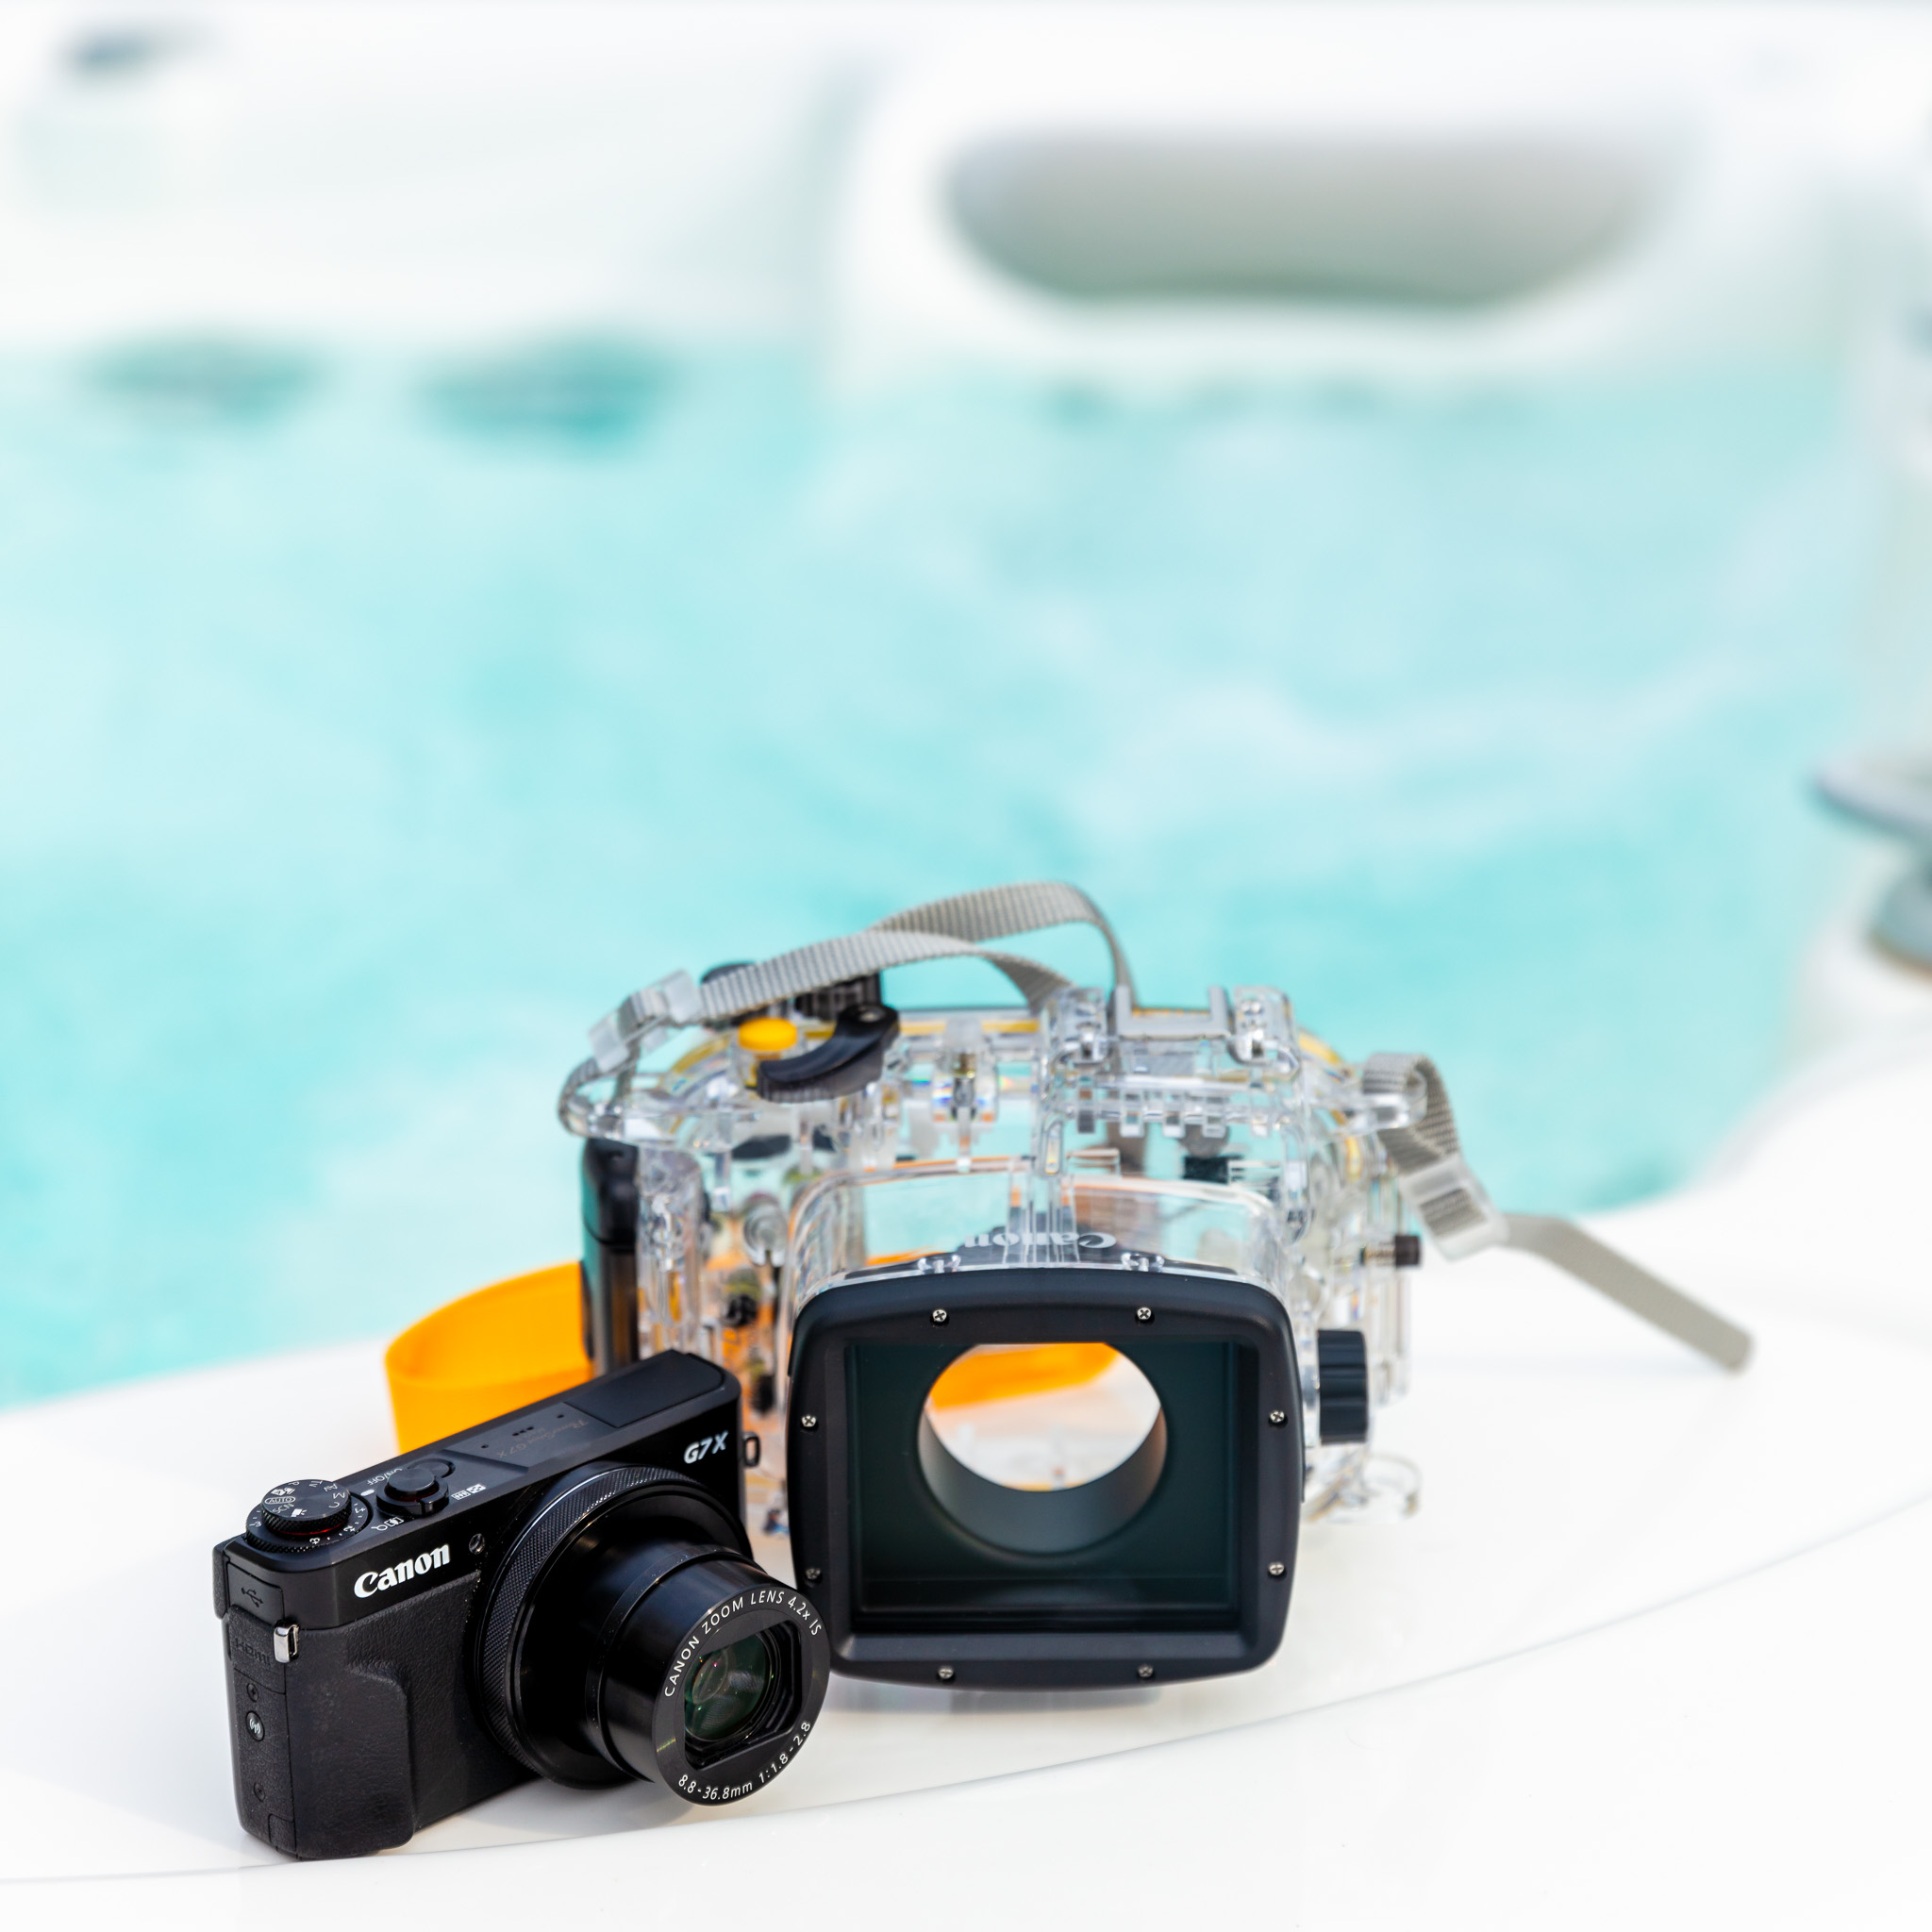 Canon PowerShot G7X mkII with Underwater Housing